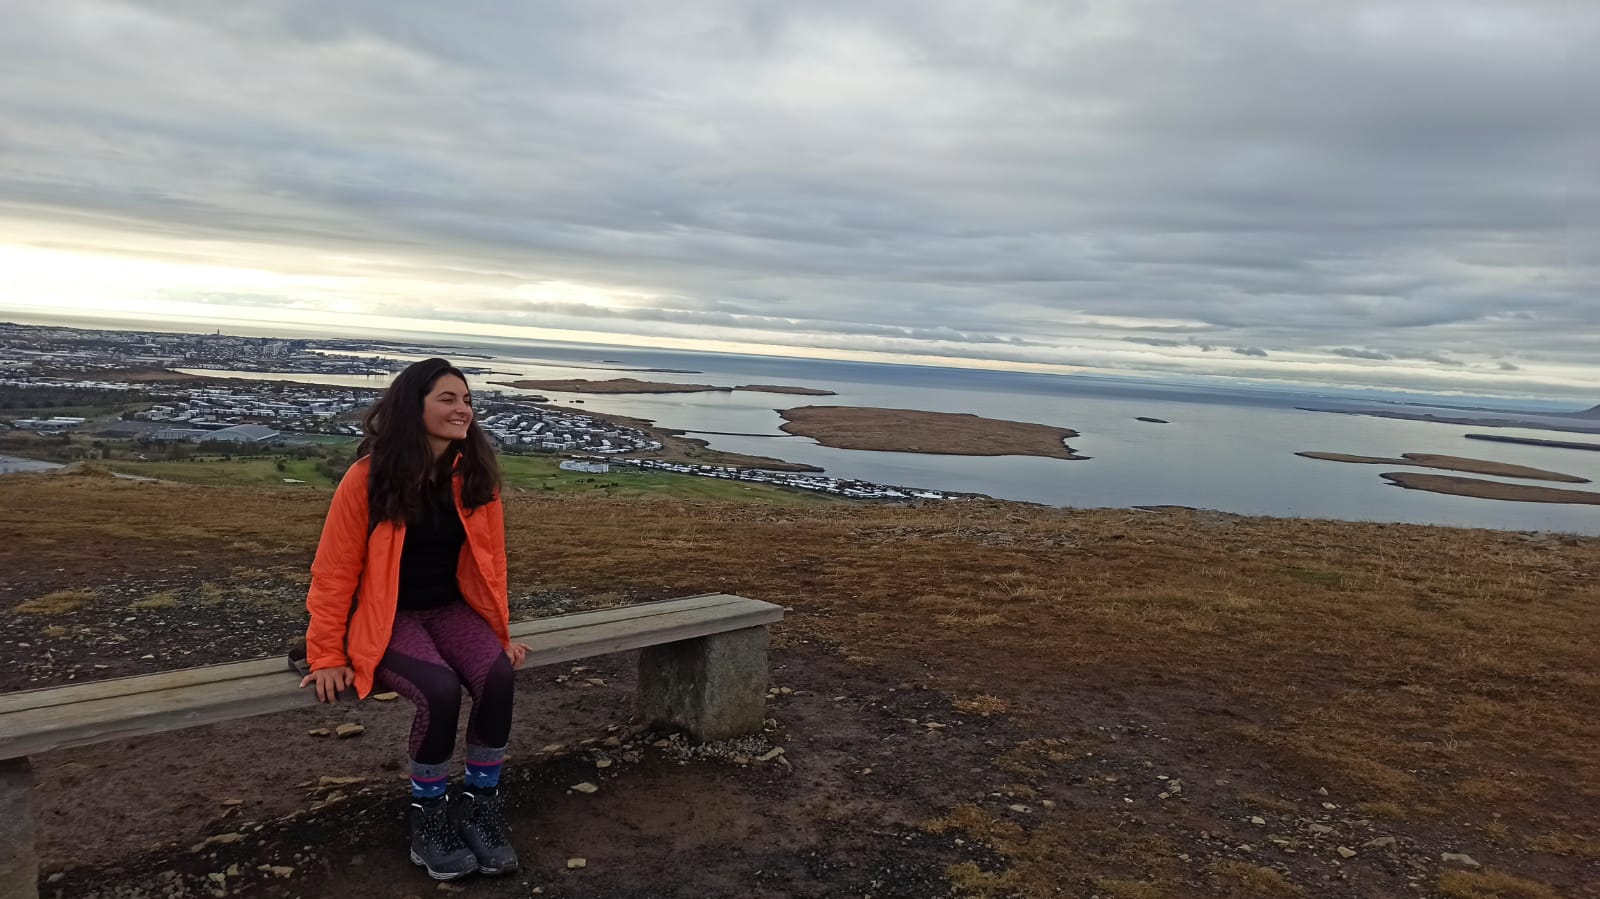 Concordia - Présentation du projet de CES d’Elise, volontaire d'Auvergne en mission en Islande